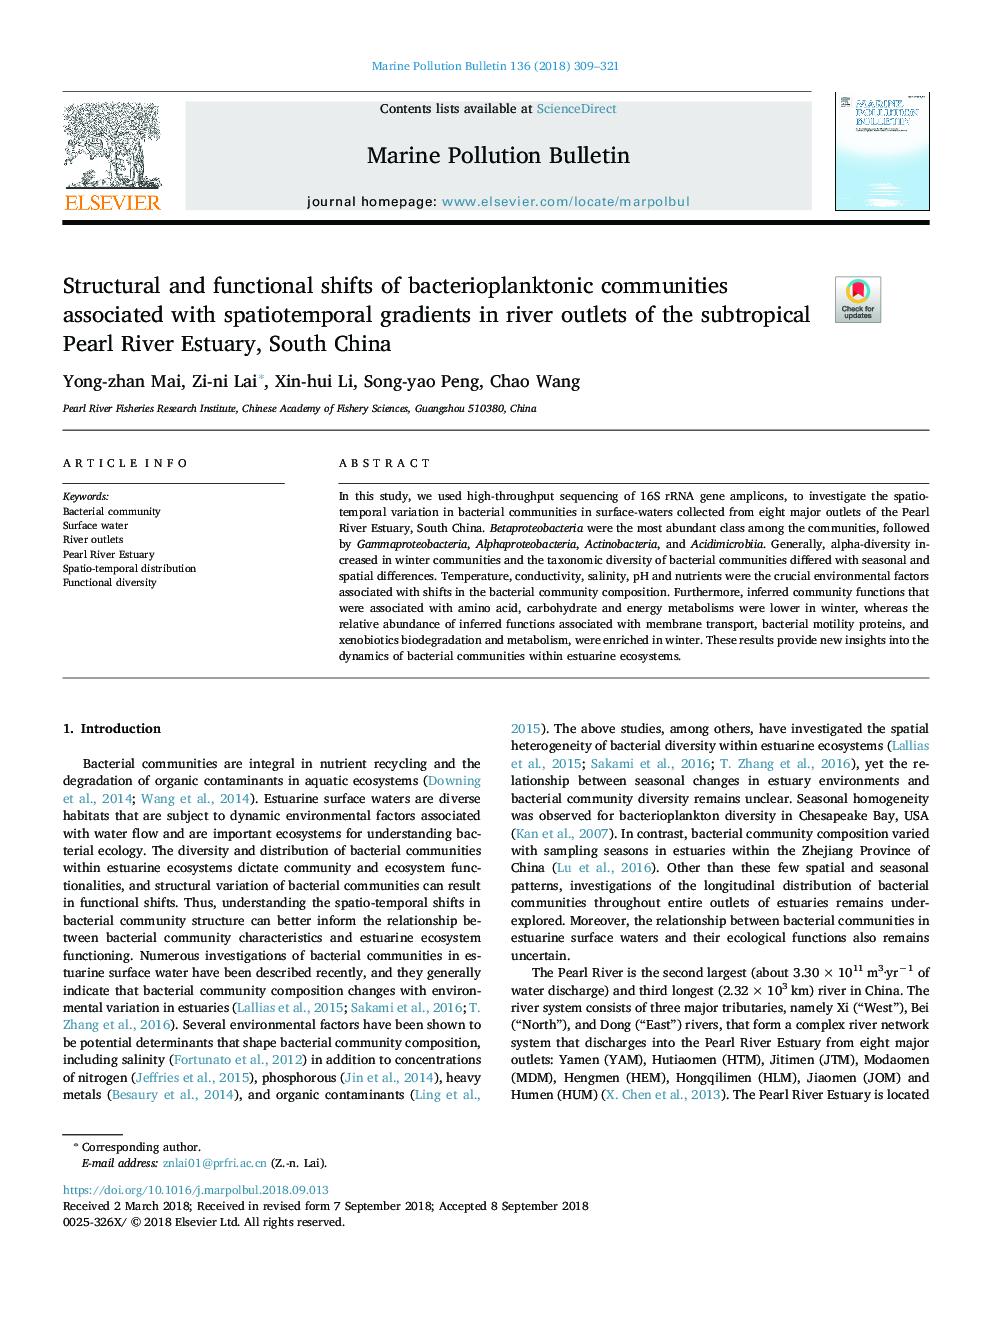 تغییرات ساختاری و عملکردی جوامع باکتریوپلانکتون در ارتباط با شیب اسپتیوتی مگسی در رودخانه های رودخانه رودخانه مروارید نیمه گرمسیری، جنوب چین